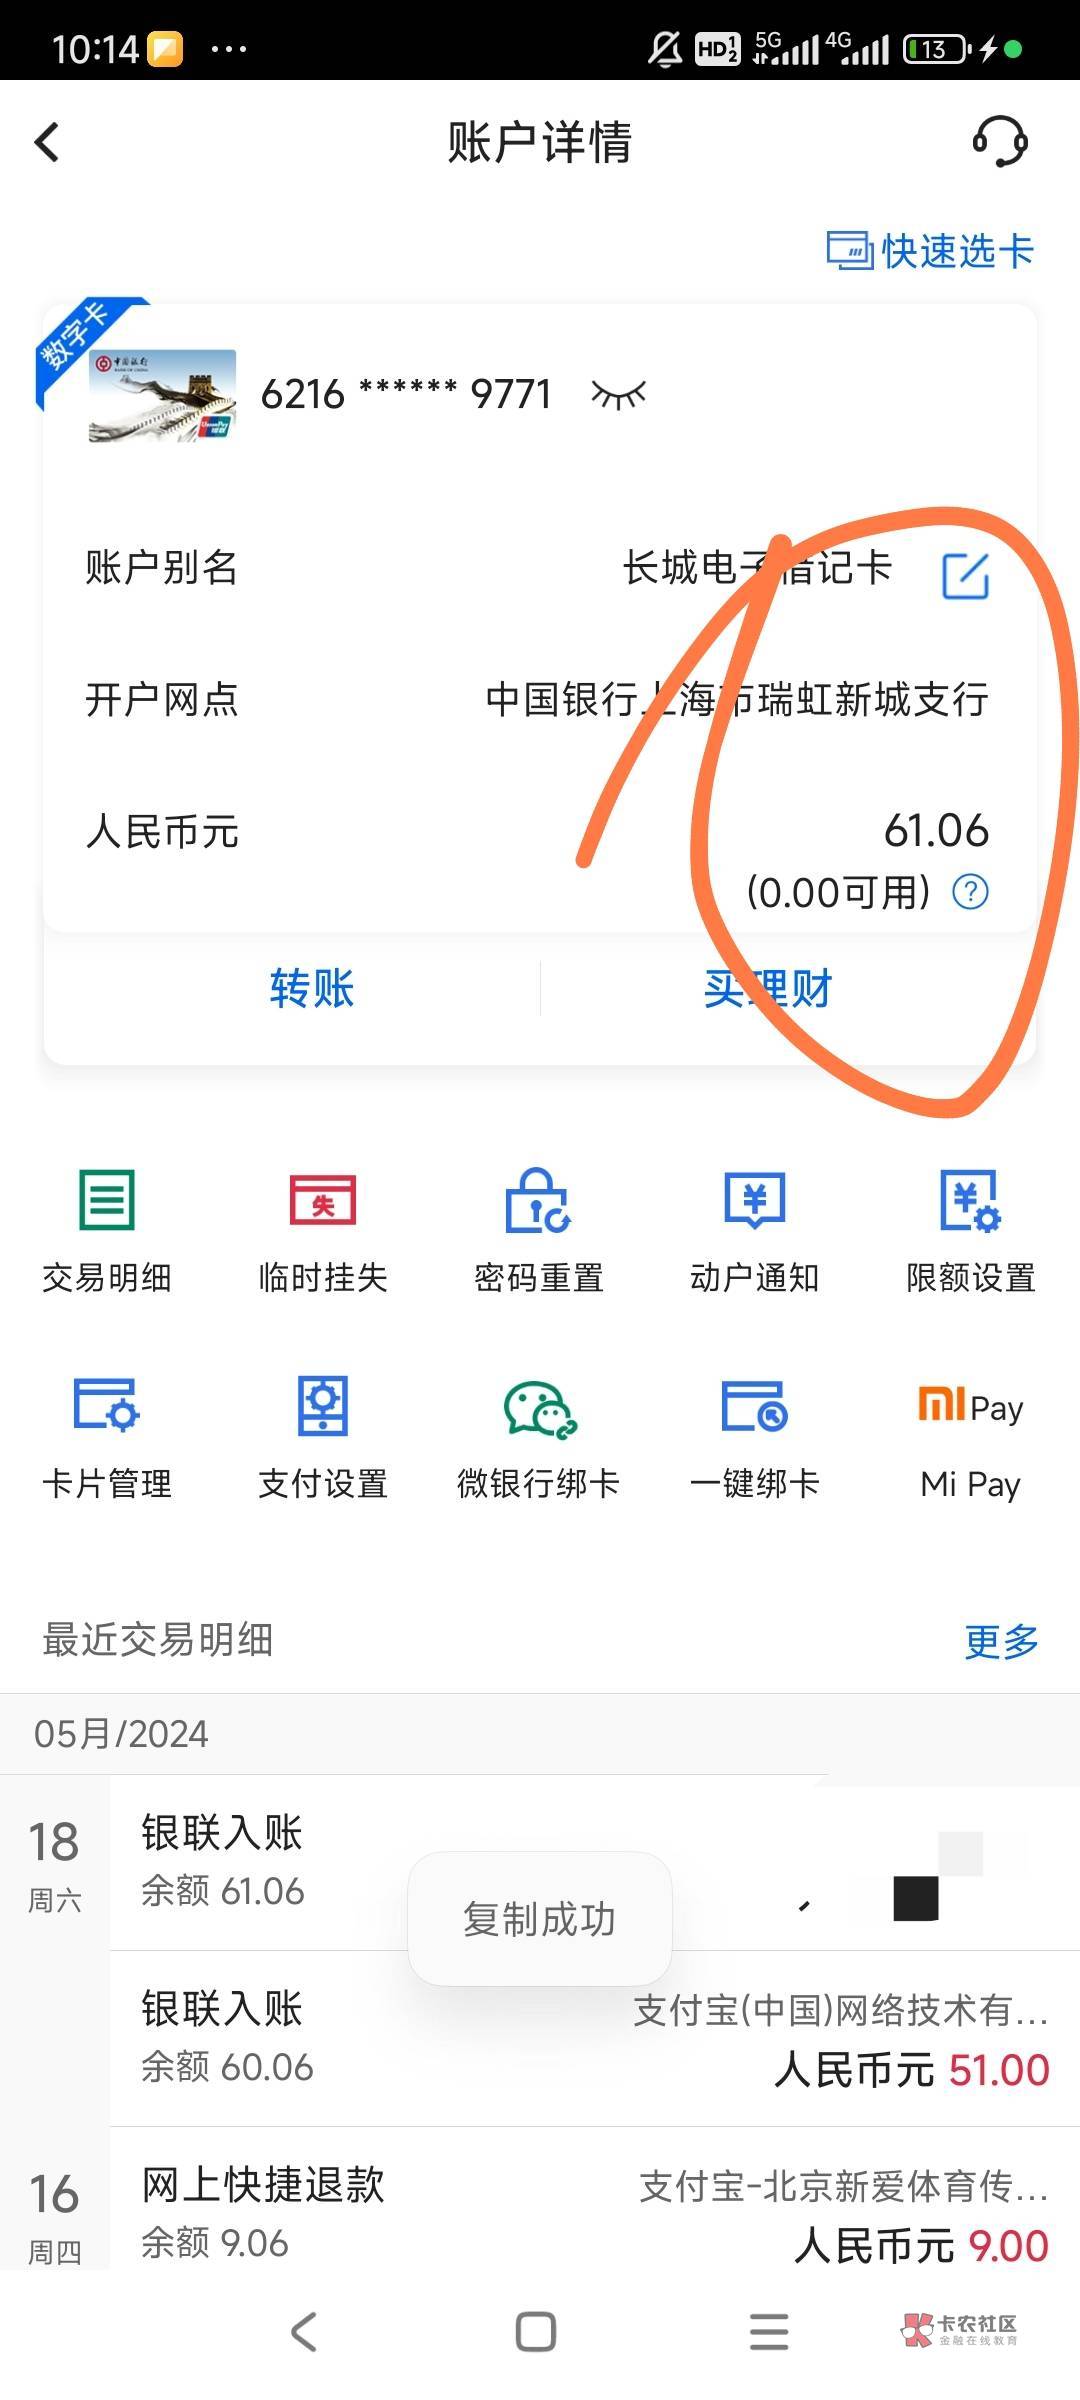 上海中行二类被冻结了，没有打过，只有小额微信支付宝提现和转账，其他不活跃二类都是60 / 作者:q1761950922。 / 